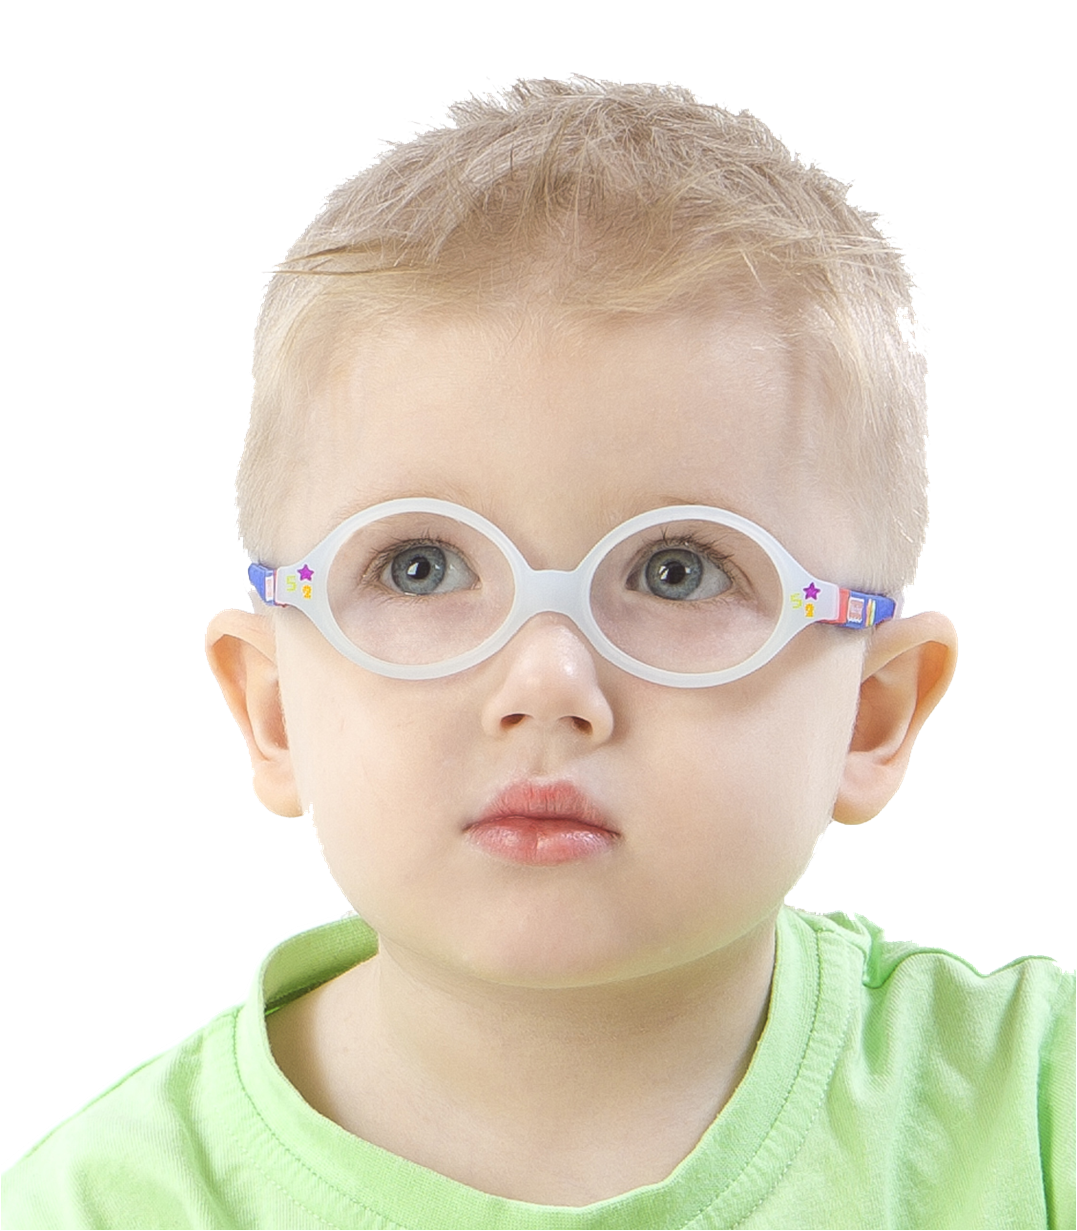 Как правильно носить очки для зрения и привыкнуть к очкам oculistic.ru
как правильно носить очки для зрения и привыкнуть к очкам